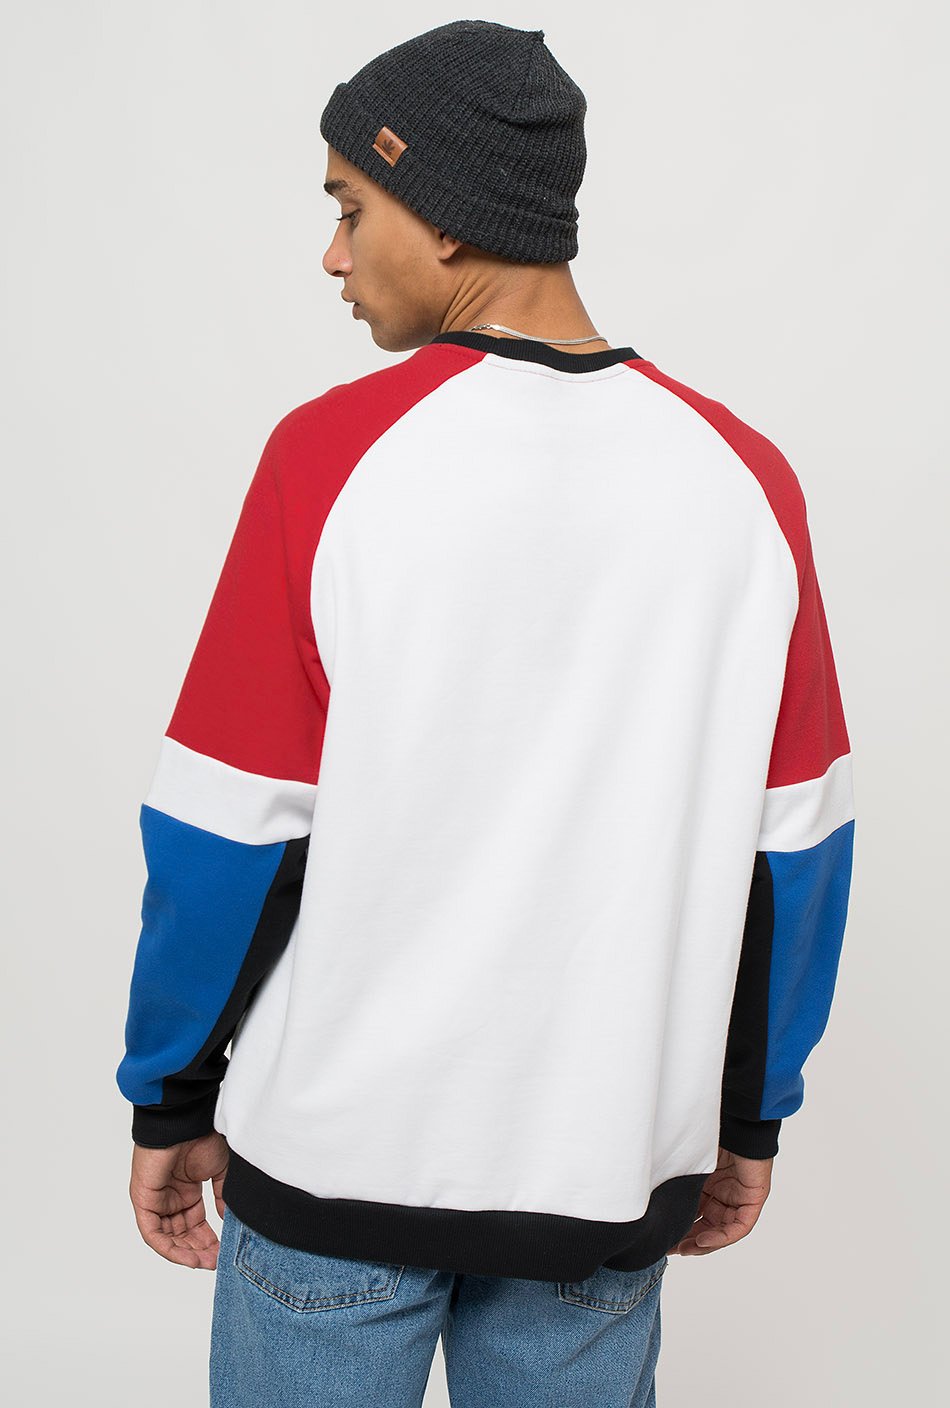 sidney white/red sweatshirt